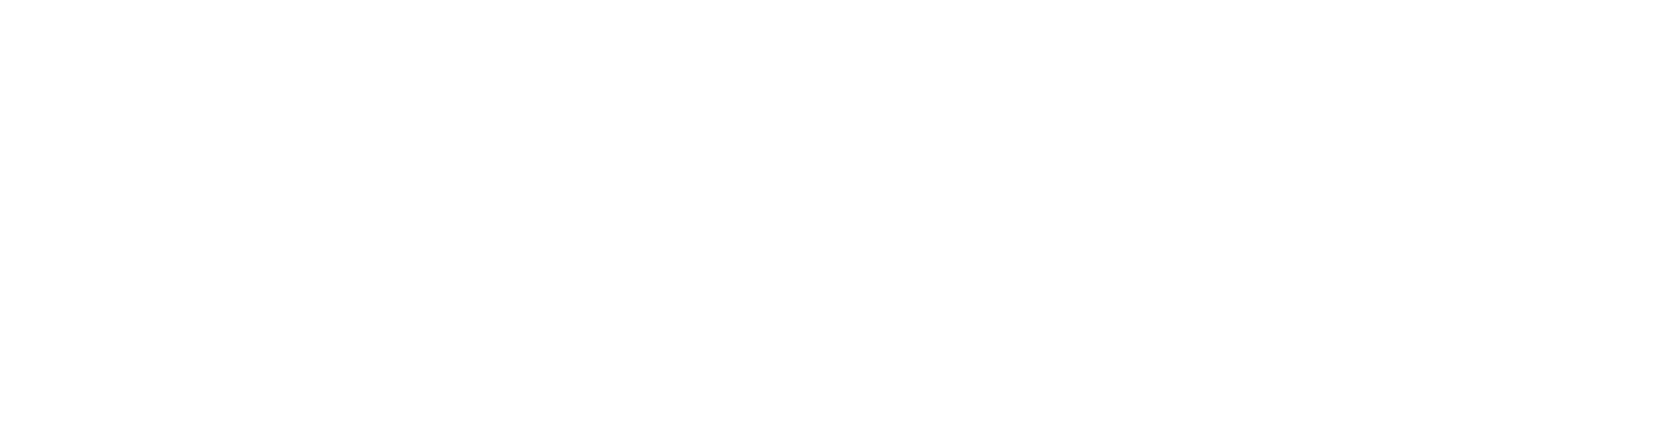 comminty health logo